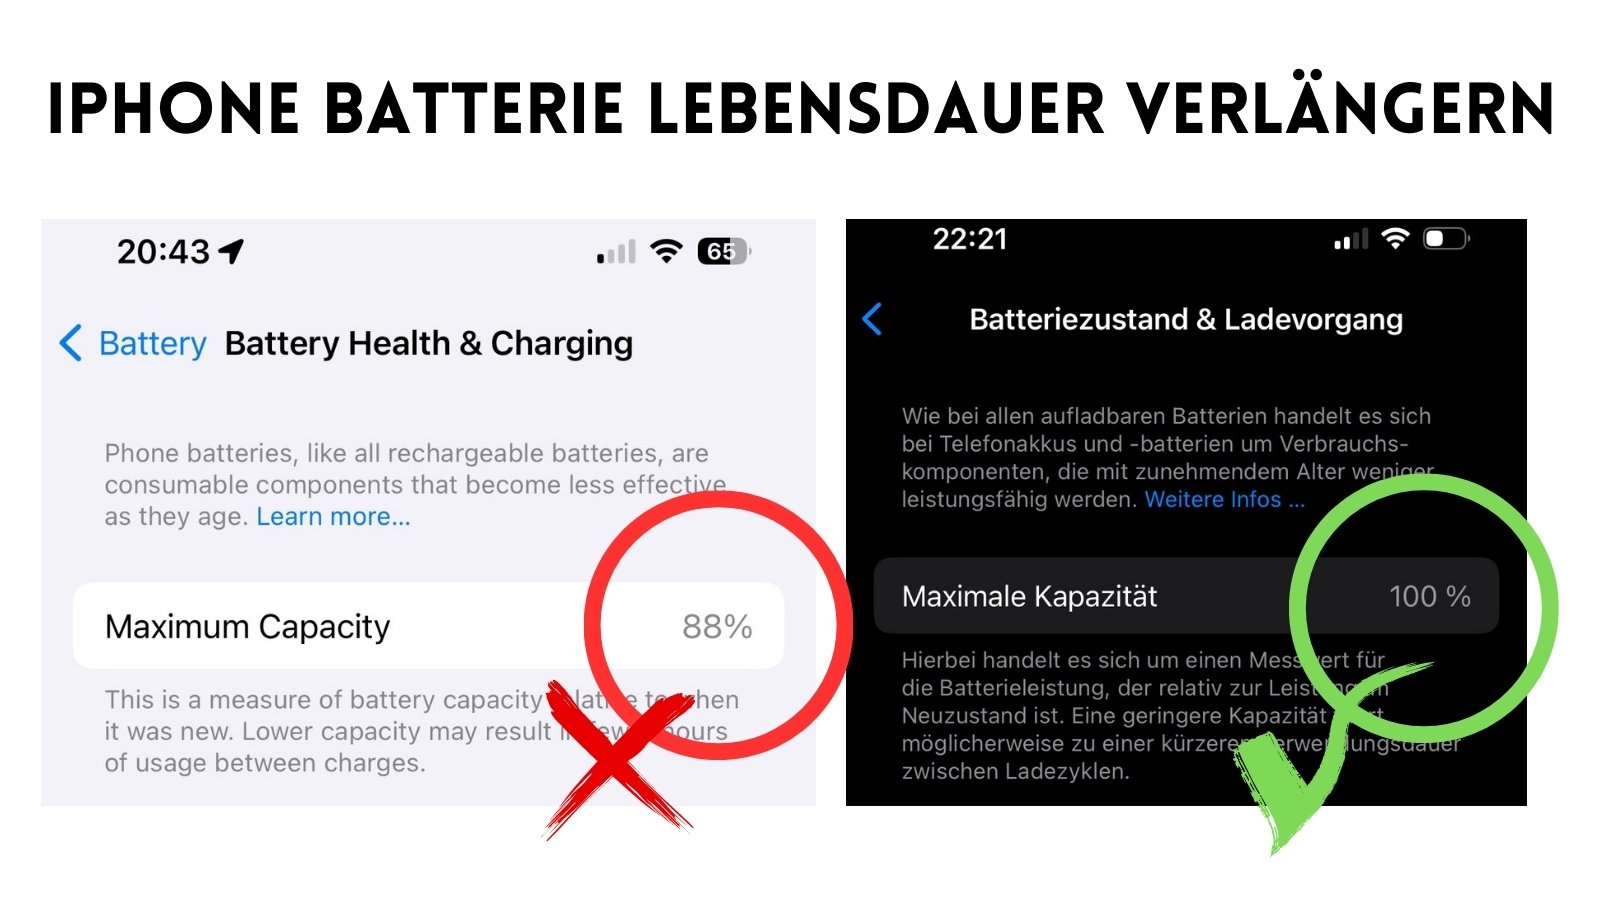 iPhone Batteriezustand länger erhalten – 100% Kapazität nach 11 Monaten